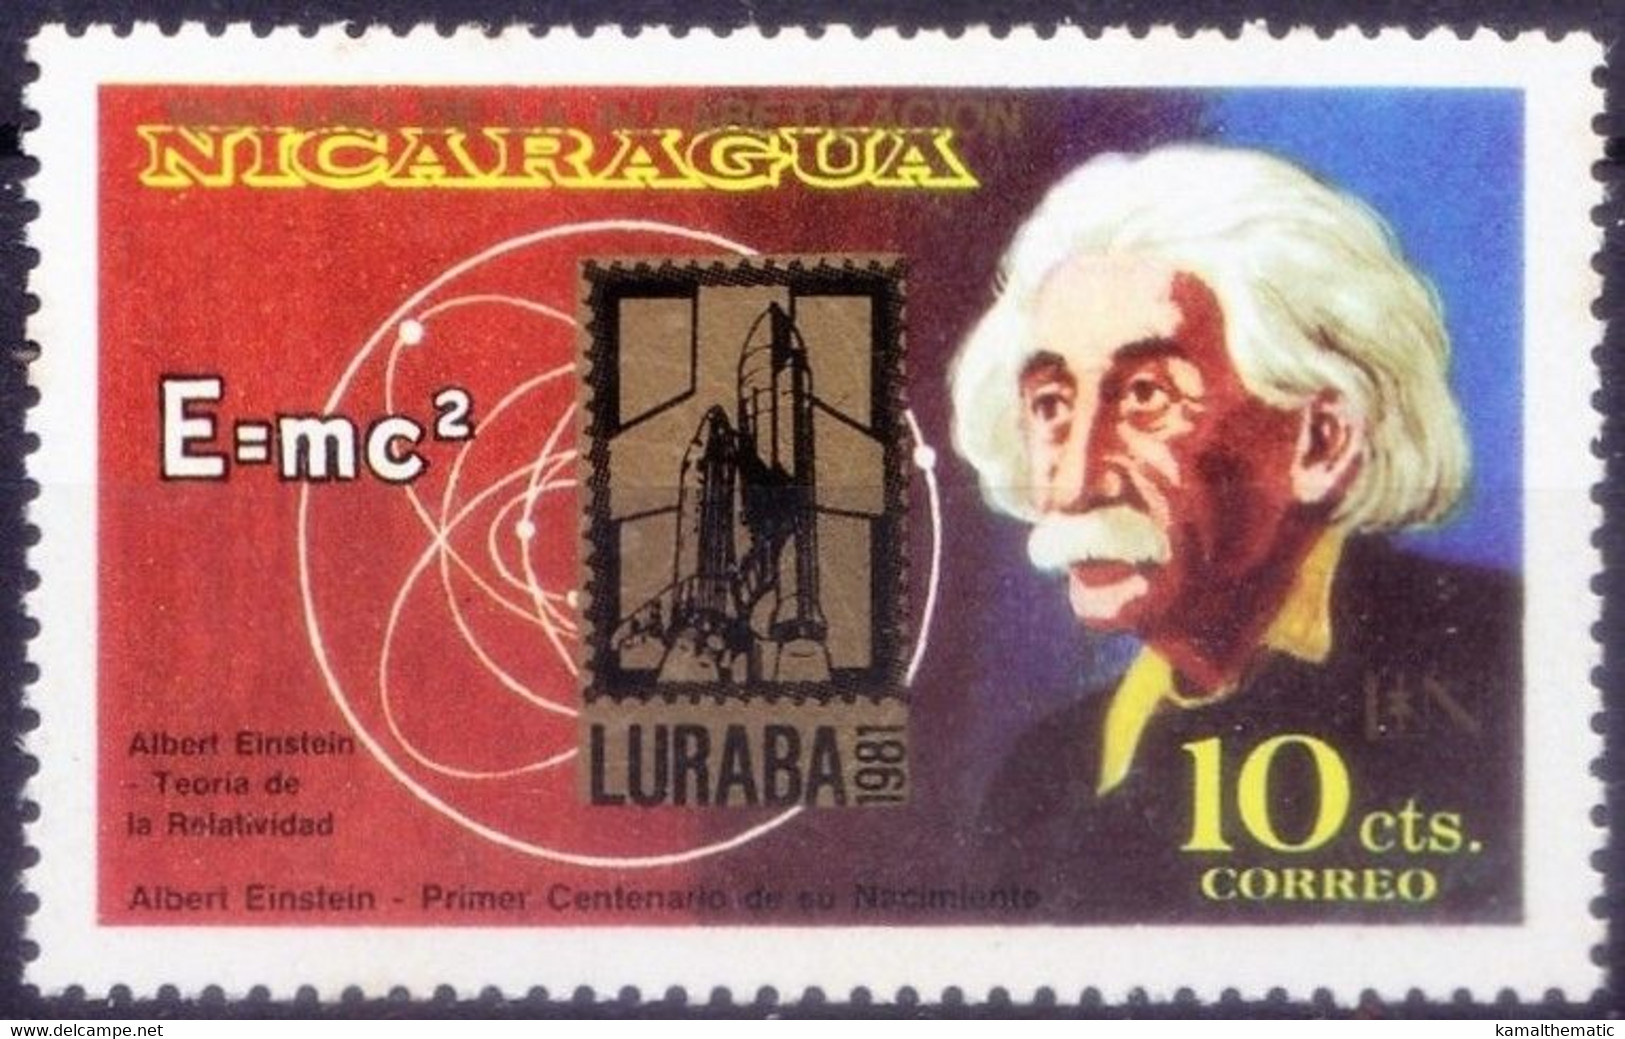 Nicaragua 1981 MNH No Gum, Einstein Nobel Physics, OVP Space Luraba - Albert Einstein